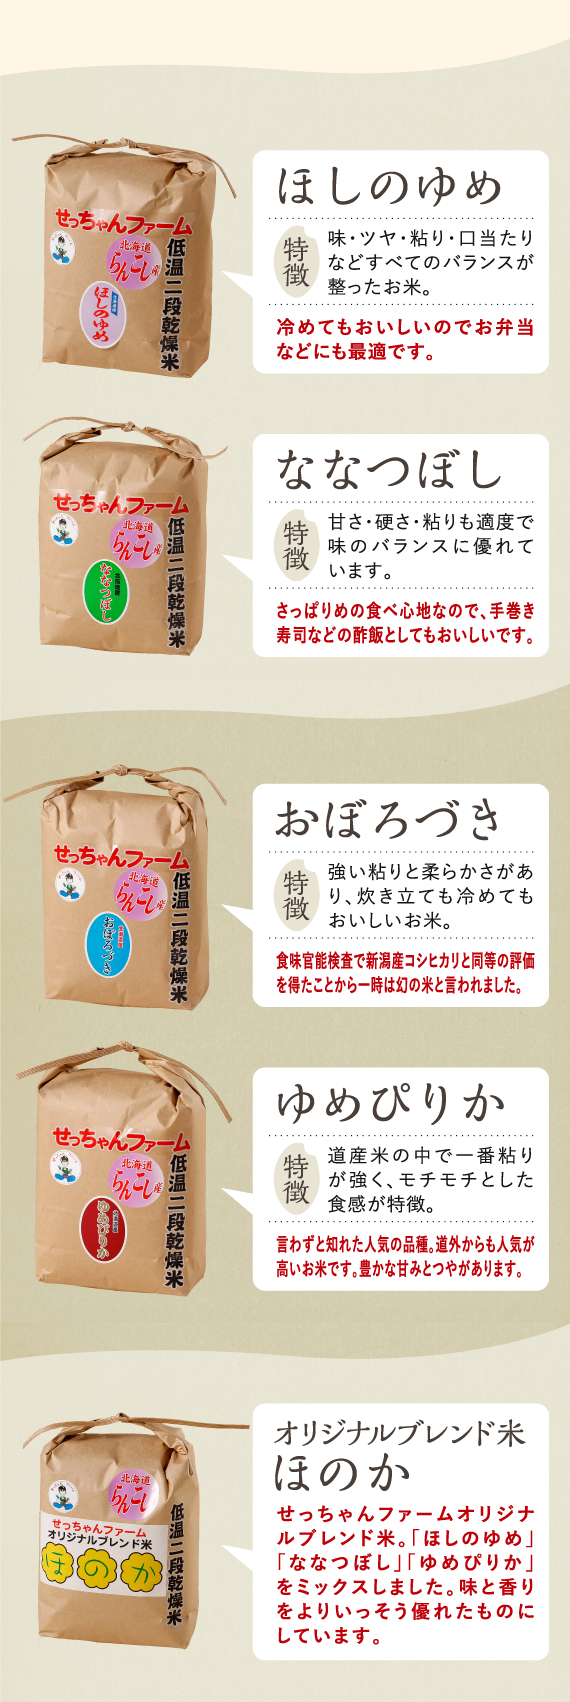 らんこし米の各種パッケージ画像と【テキスト】特徴の説明